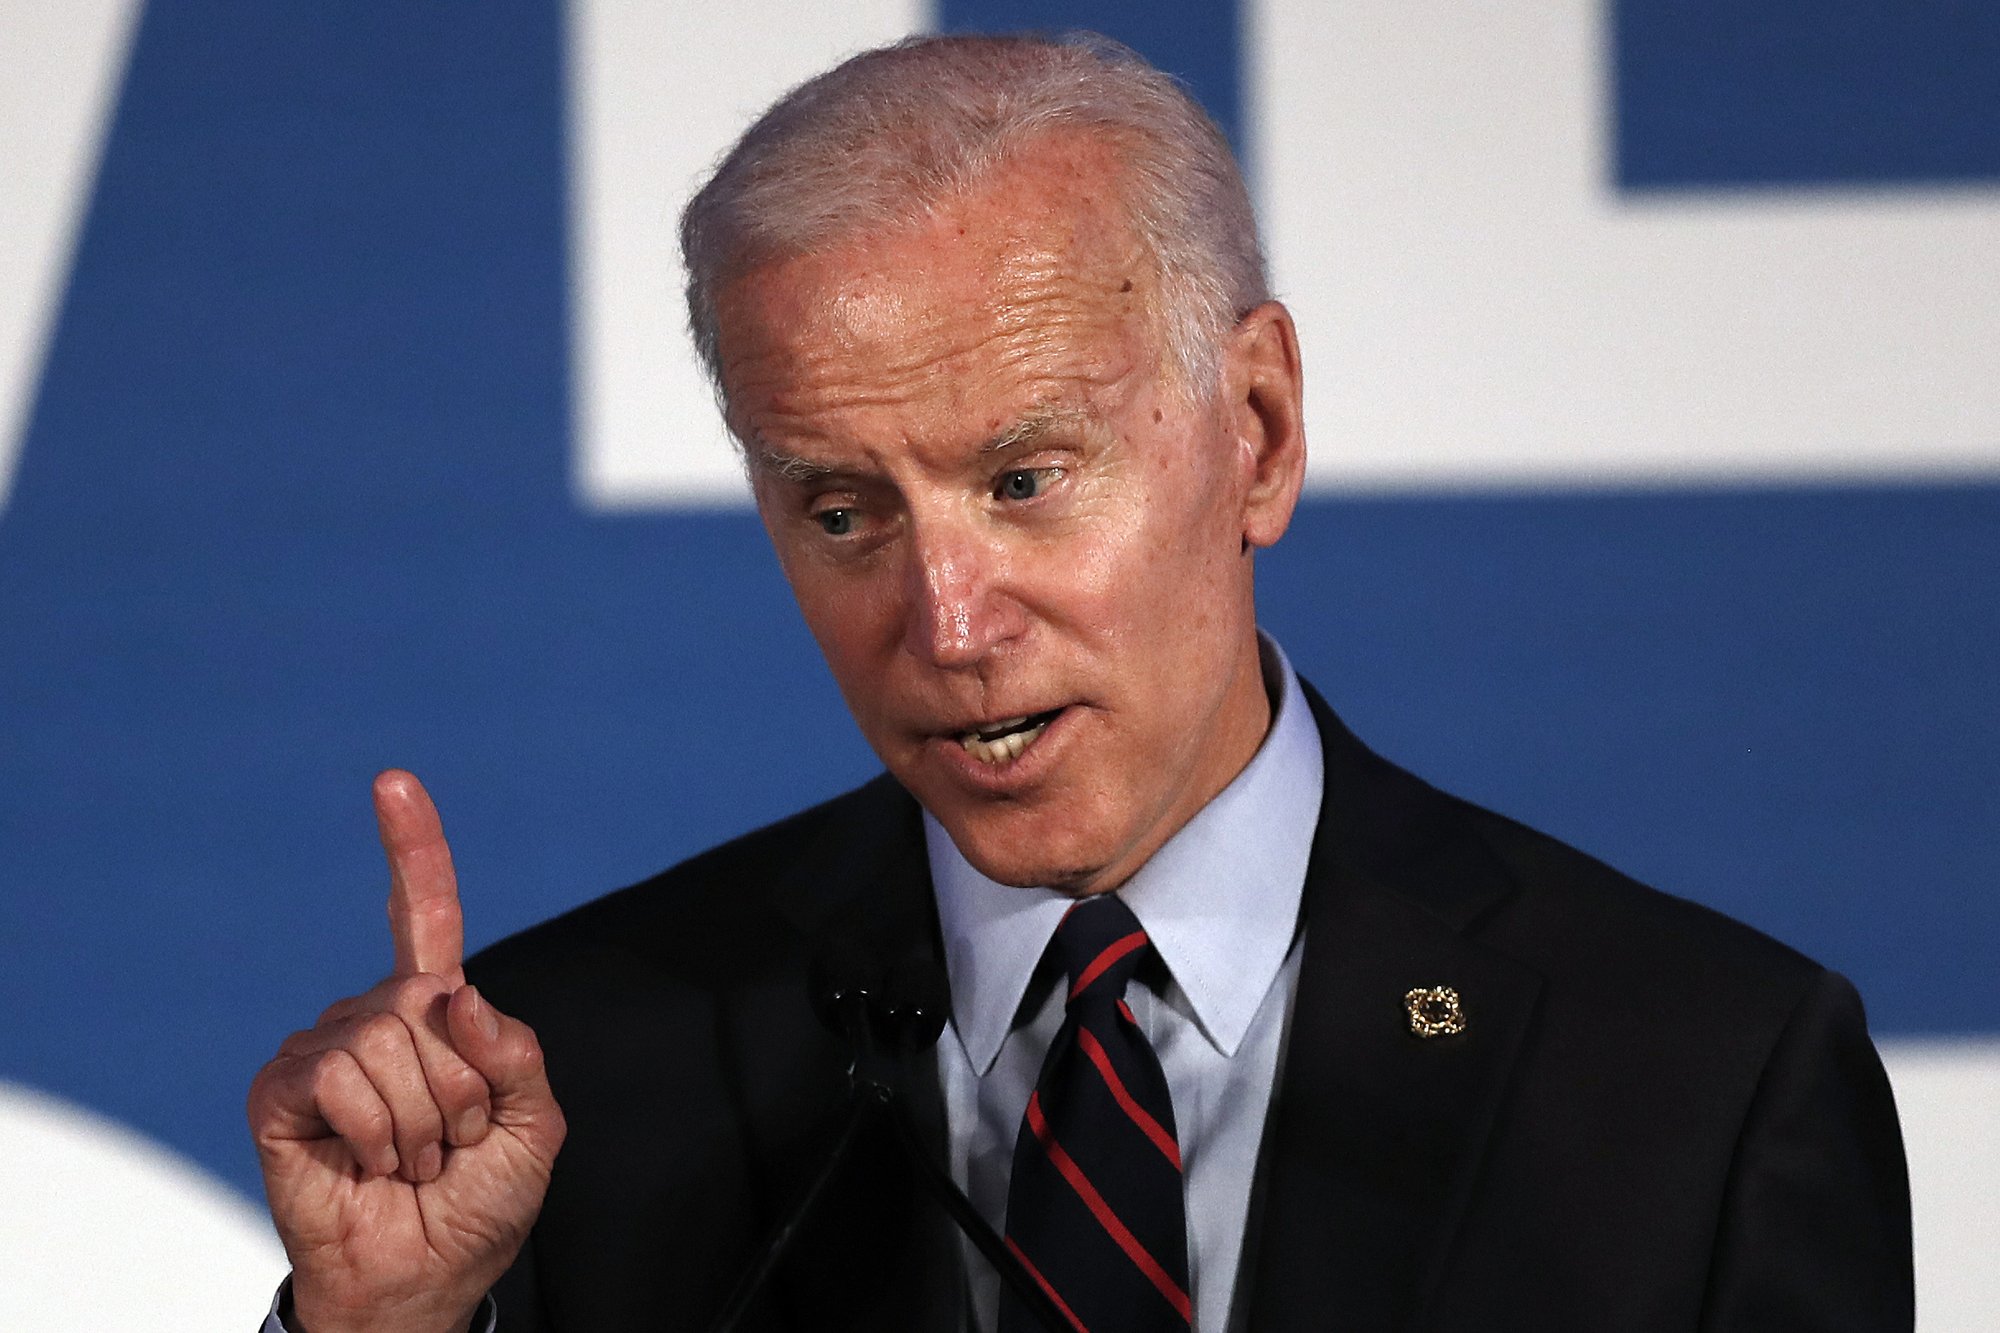 Joe Biden slammed for abortion position. 